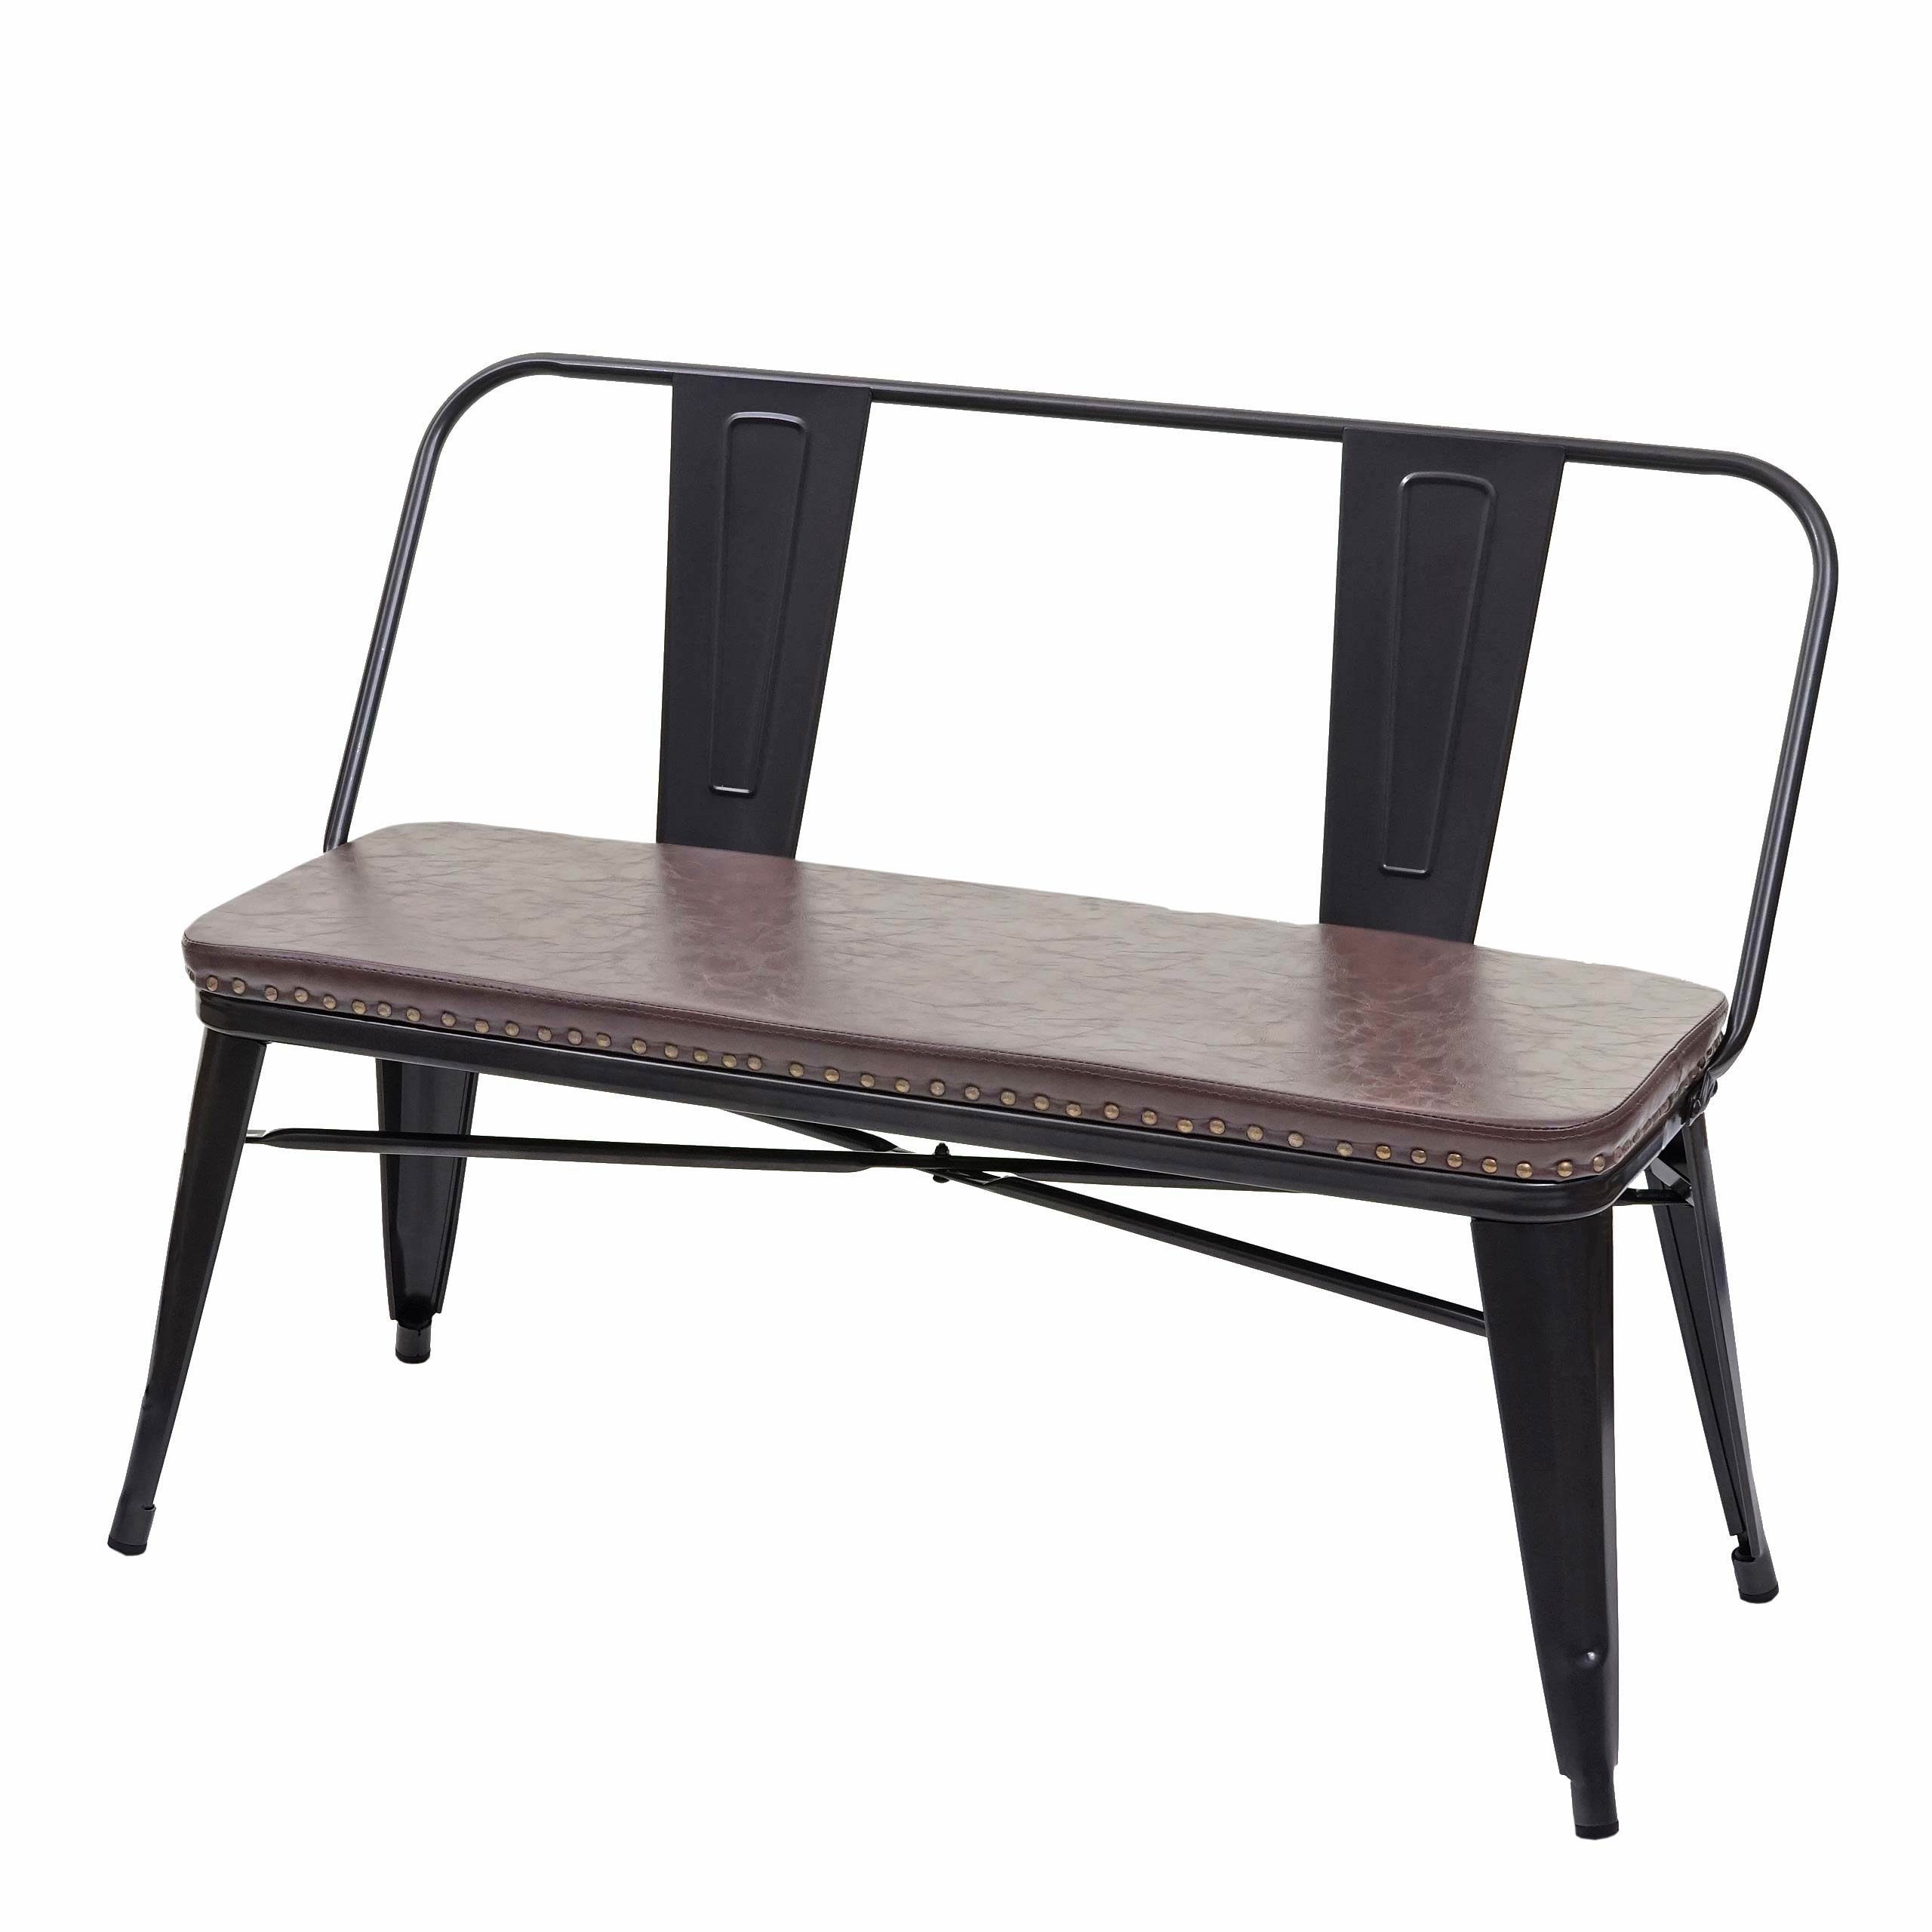 MCW Sitzbank MCW-H10-SB, Gepolsterte Sitzfläche aus Kunstleder, Abgerundete Ecken und Kanten braun, schwarz | braun